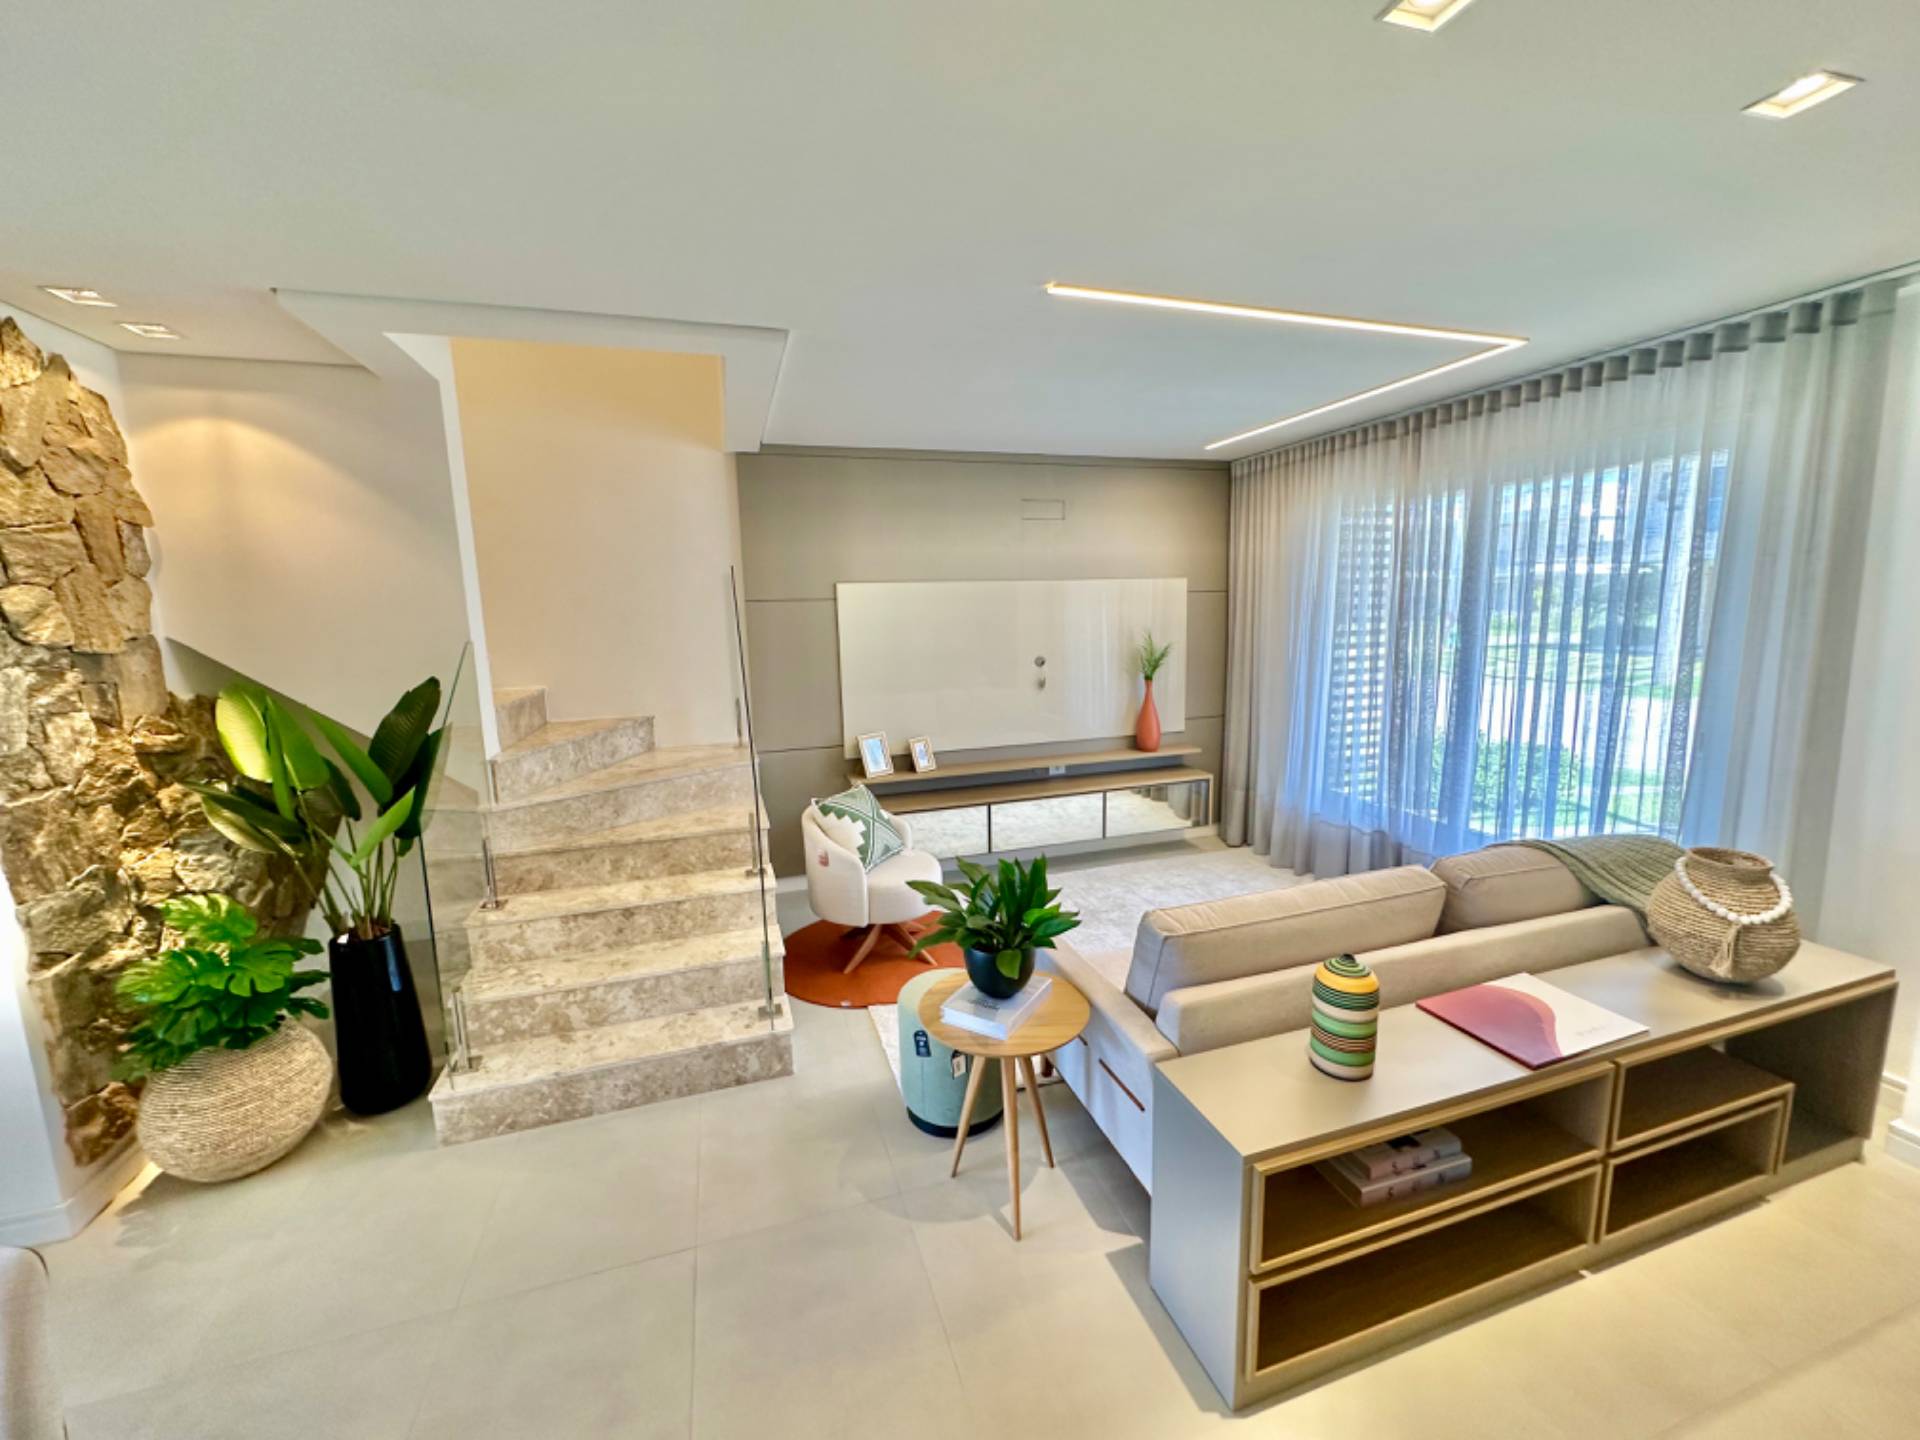 Casa em Condomínio 3 dormitórios para venda, Condomínio Murano - Zona Nova em Capão da Canoa | Ref.: 8155